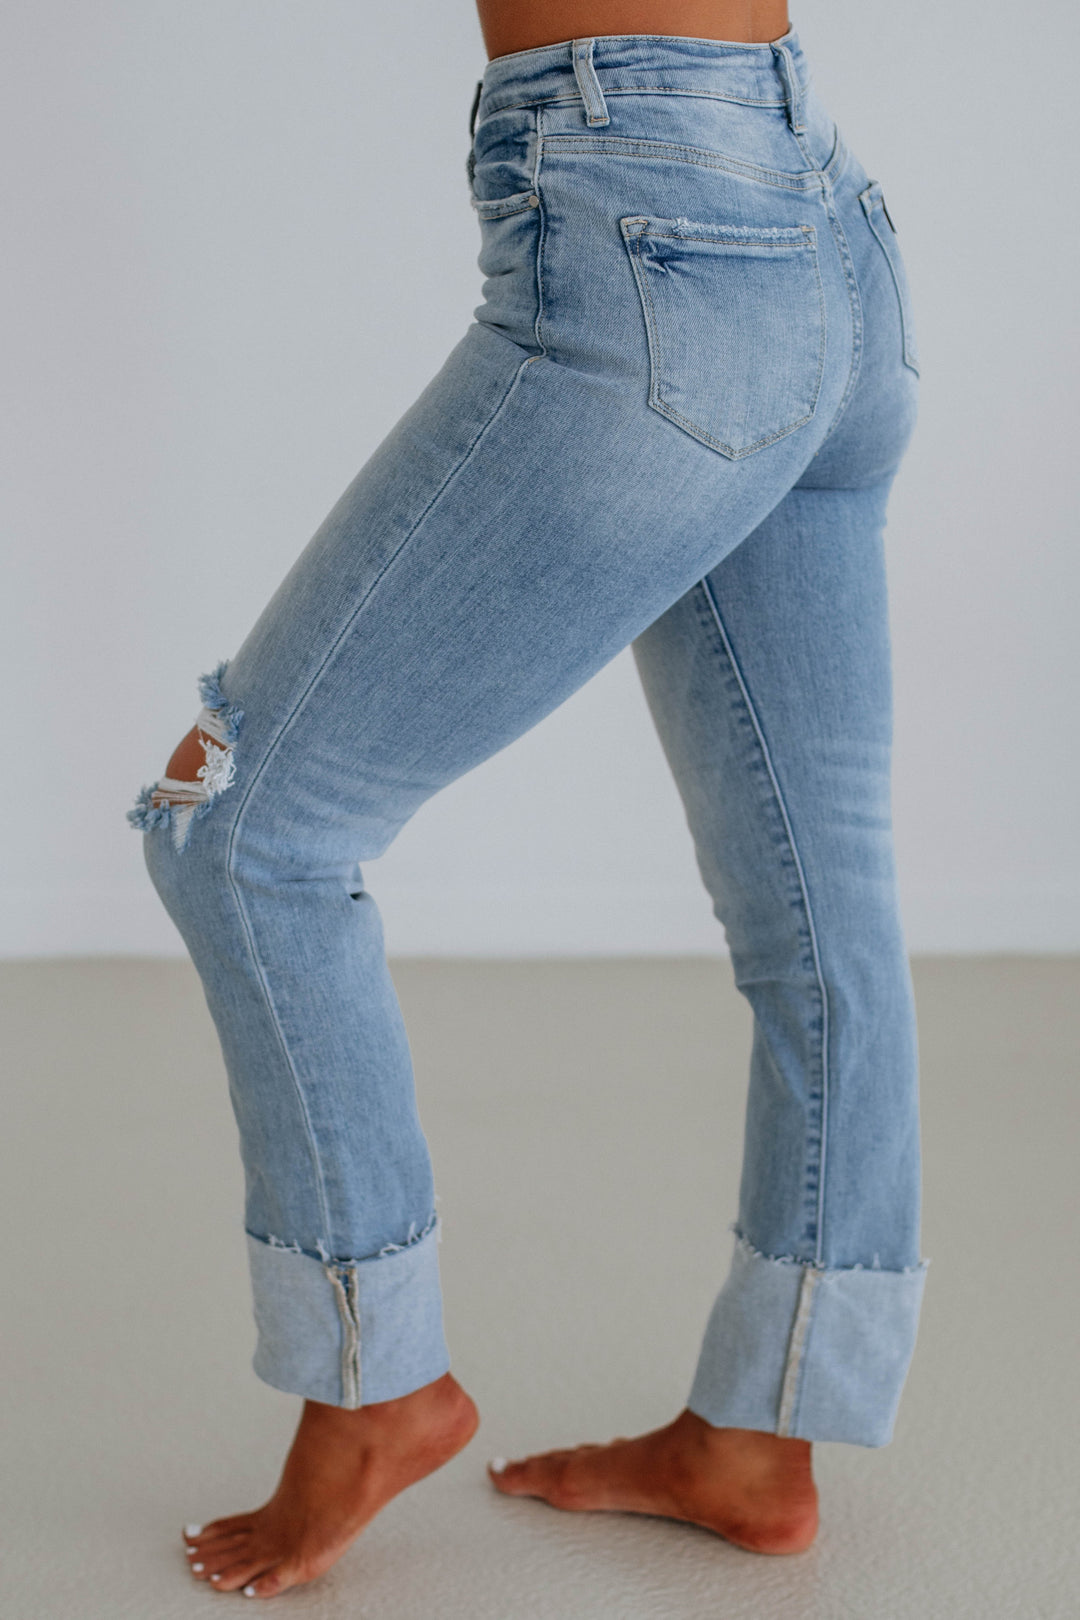 Kalen Risen Jeans